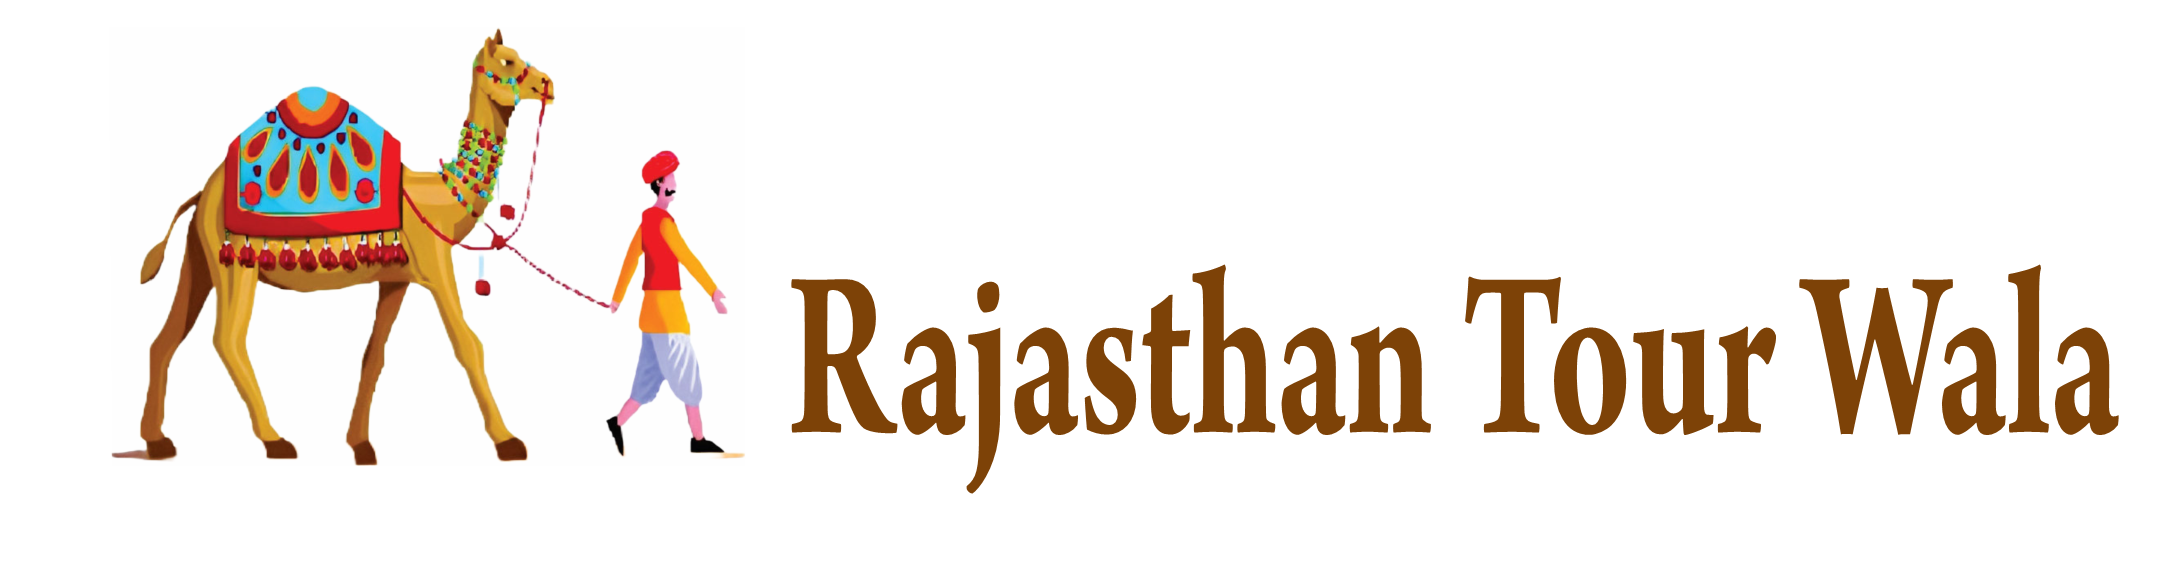 Rajasthan Tour Wala